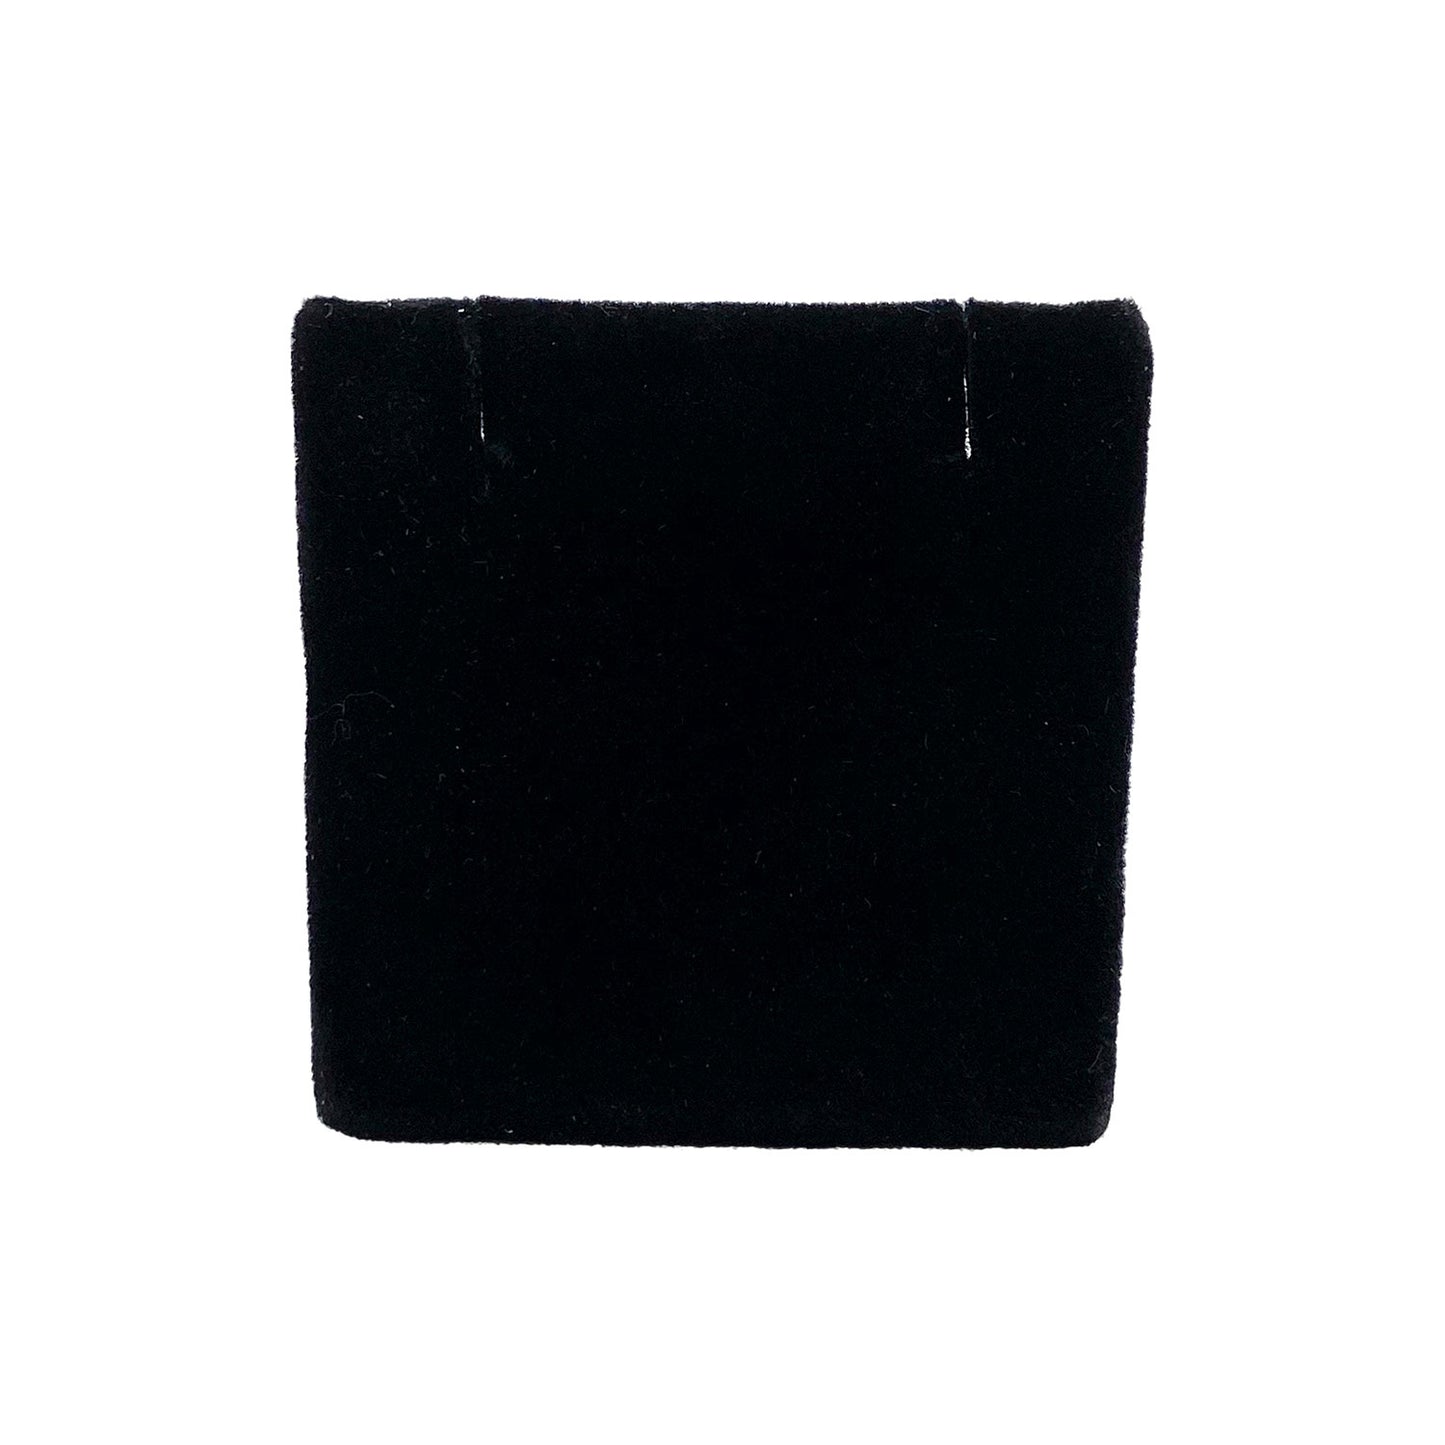 6 Pack of 2" x 2" Black Velvet Earring/Pendant Displays